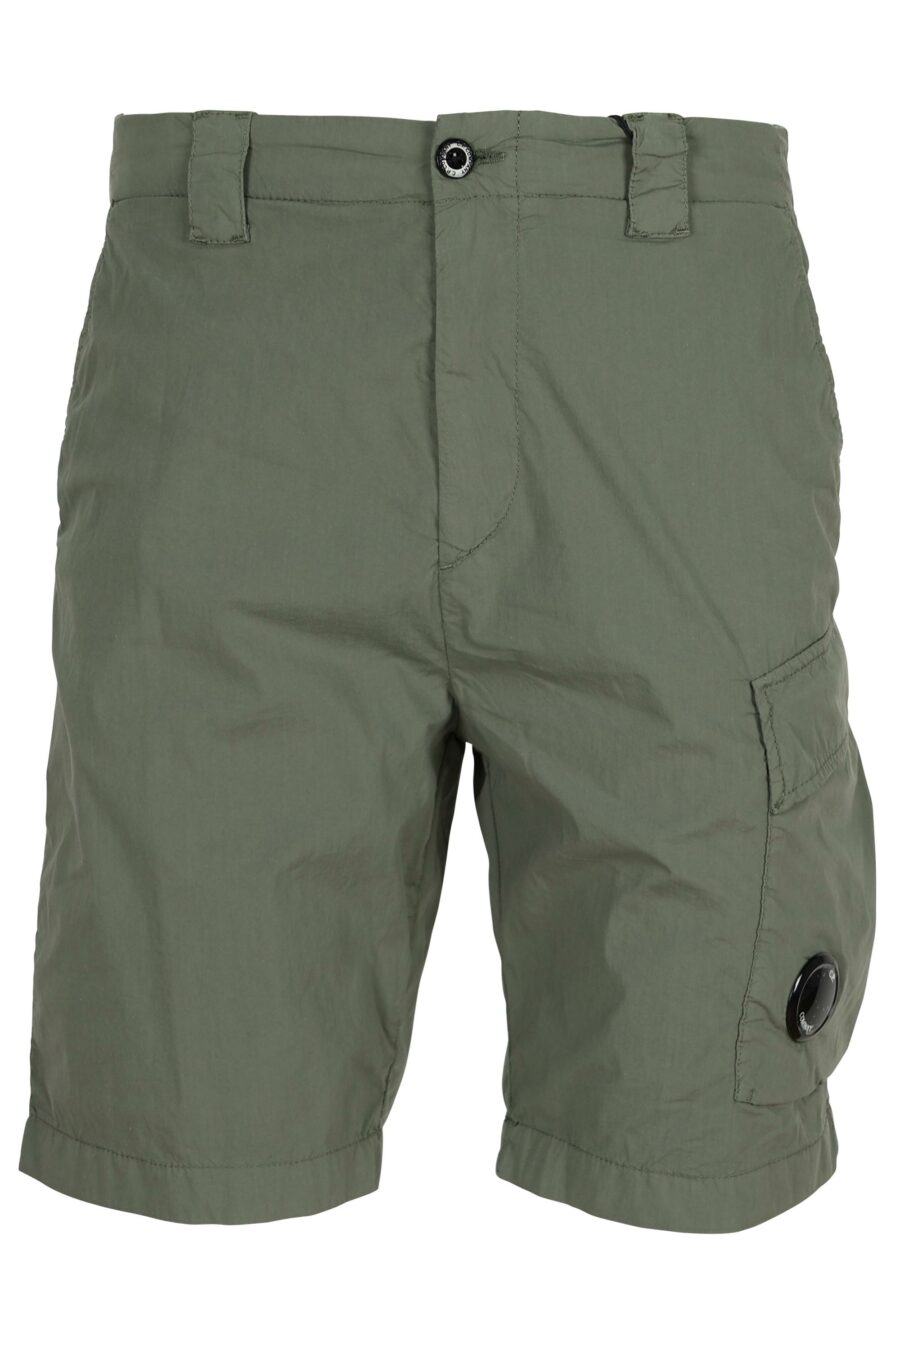 Pantalón corto midi verde grisaceo con minilogo lente - 7620943786422